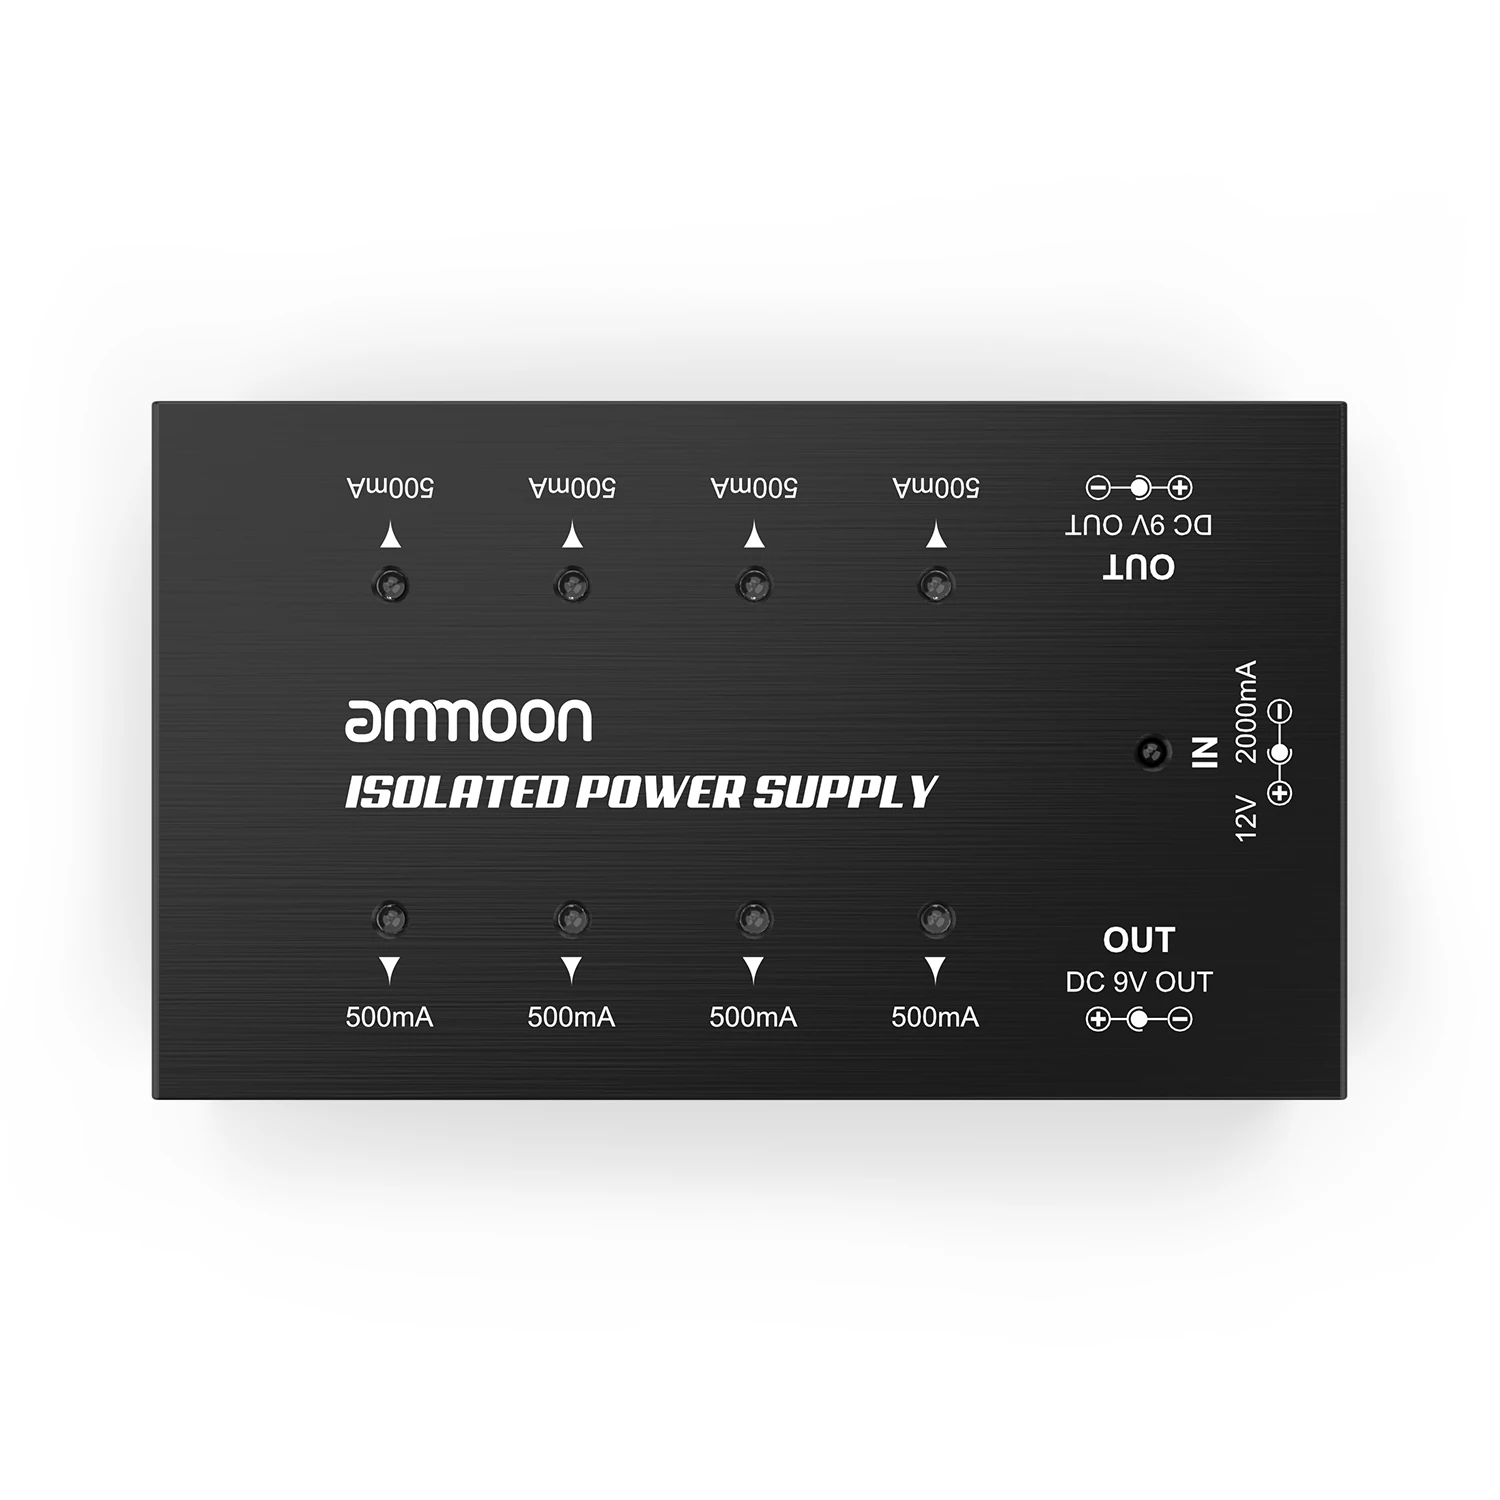 Ammoon компактный размер гитарный эффект питания 8 изолированных выходов постоянного тока гитарная педаль питания для 9 В/18 в гитарный эффект педали